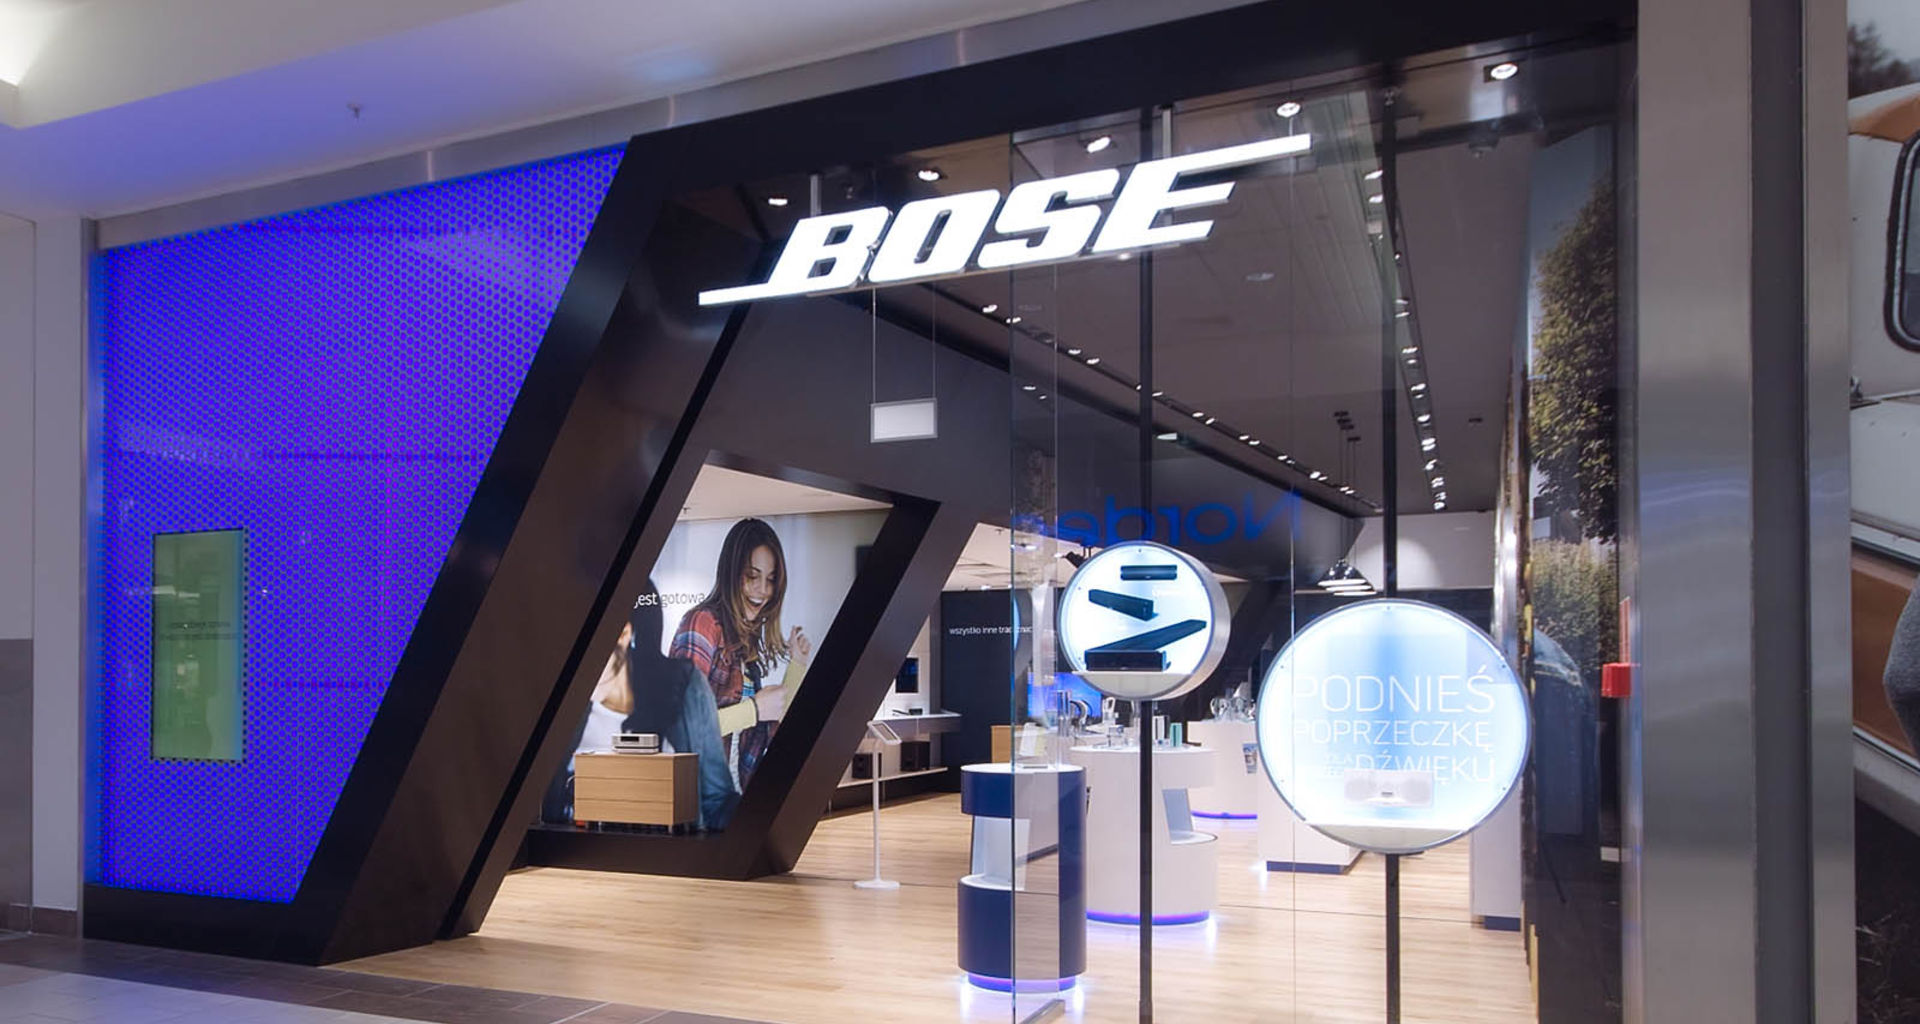 Bose London store